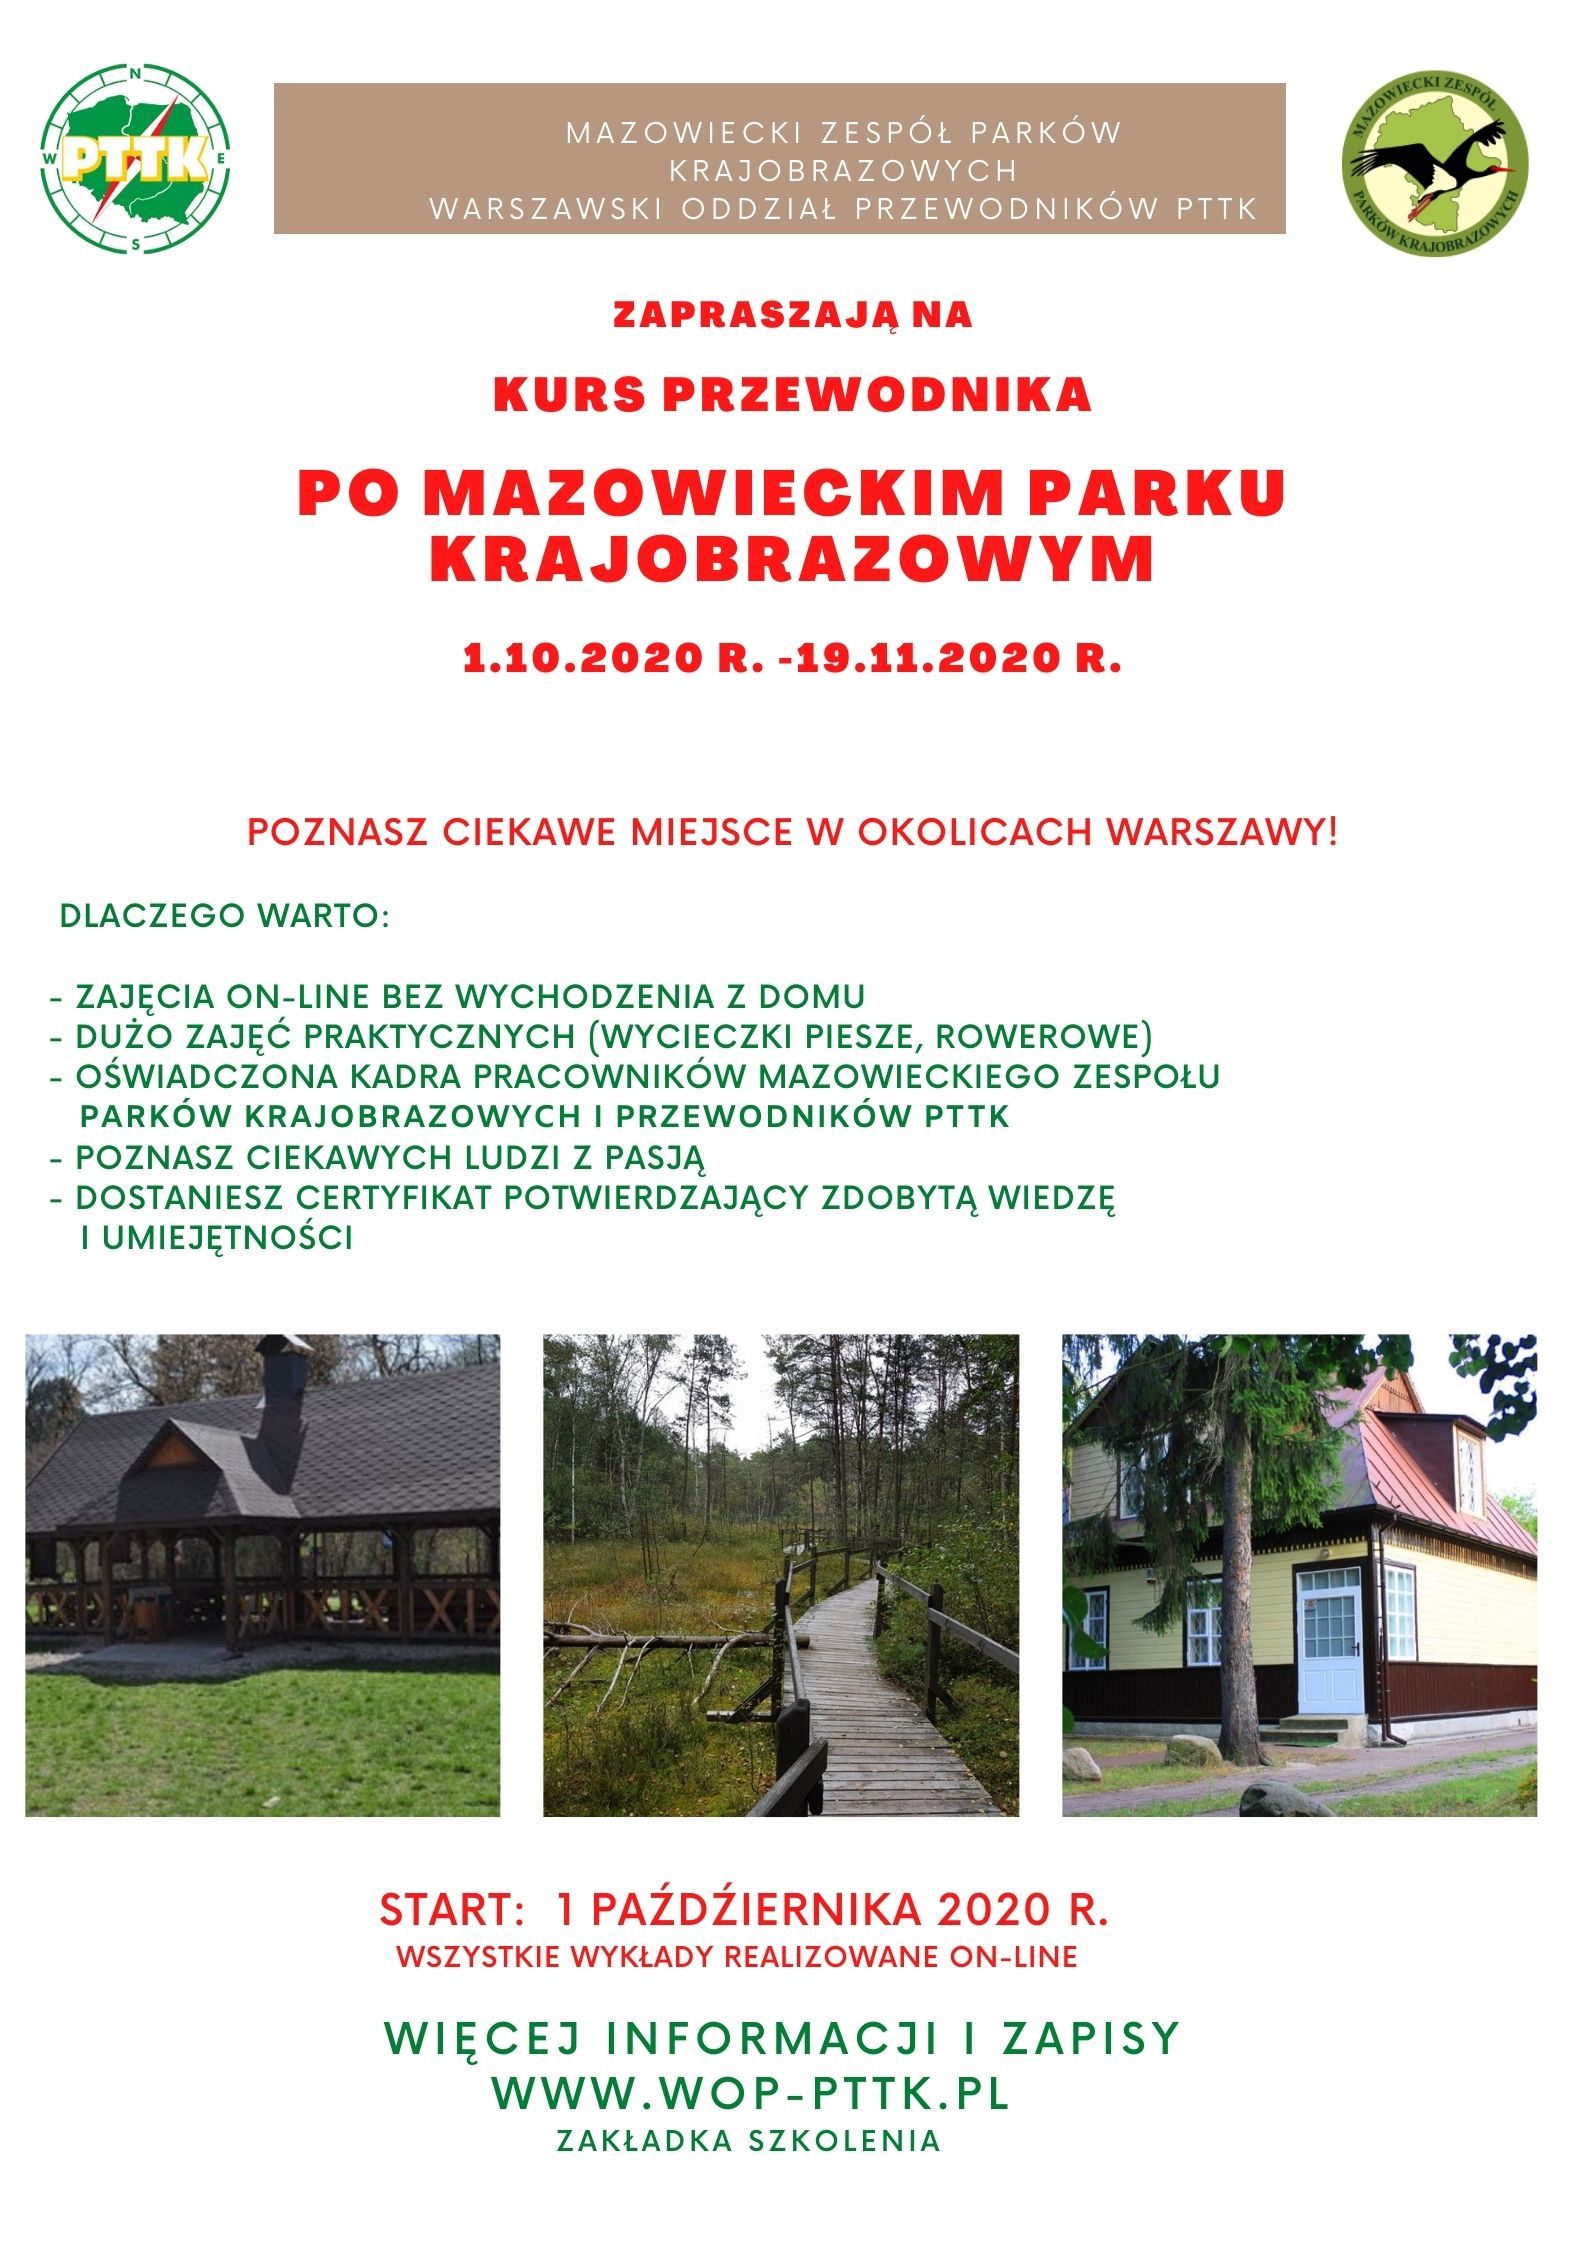 Kurs przewodnika po Mazowieckim Parku Krajobrazowym, startujemy - 1.10.2020 r.